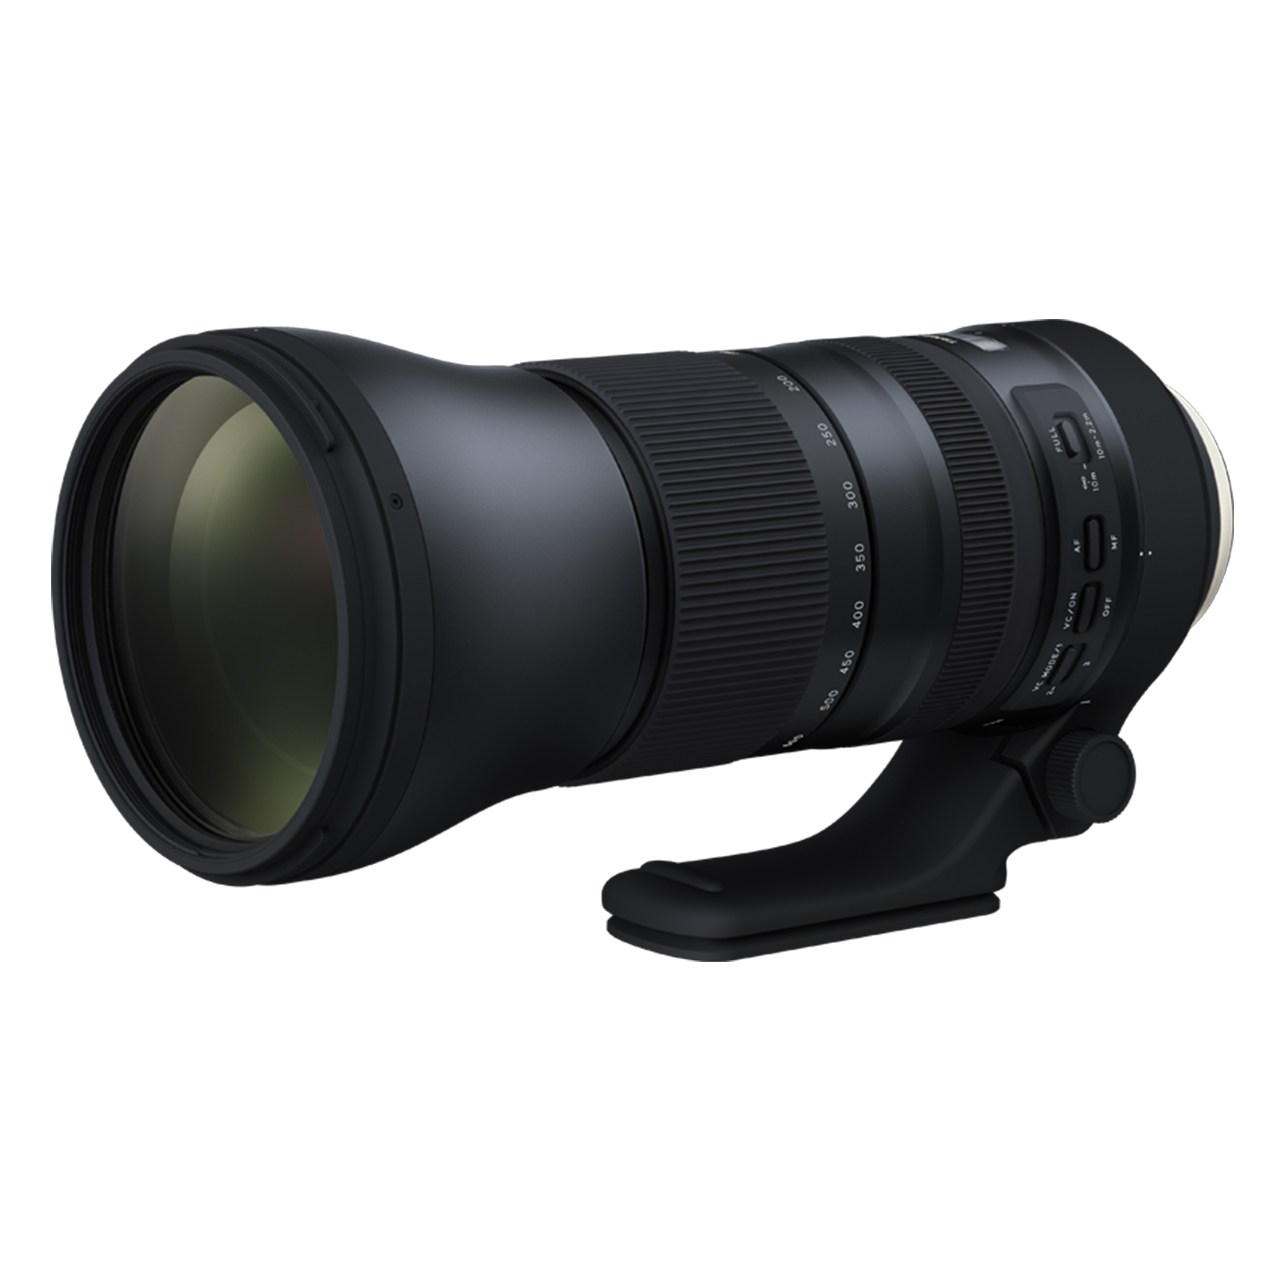 لنز تامرون مدل SP150-600mm F5-6.3 VC USD G2 مناسب برای دوربین‌های نیکون